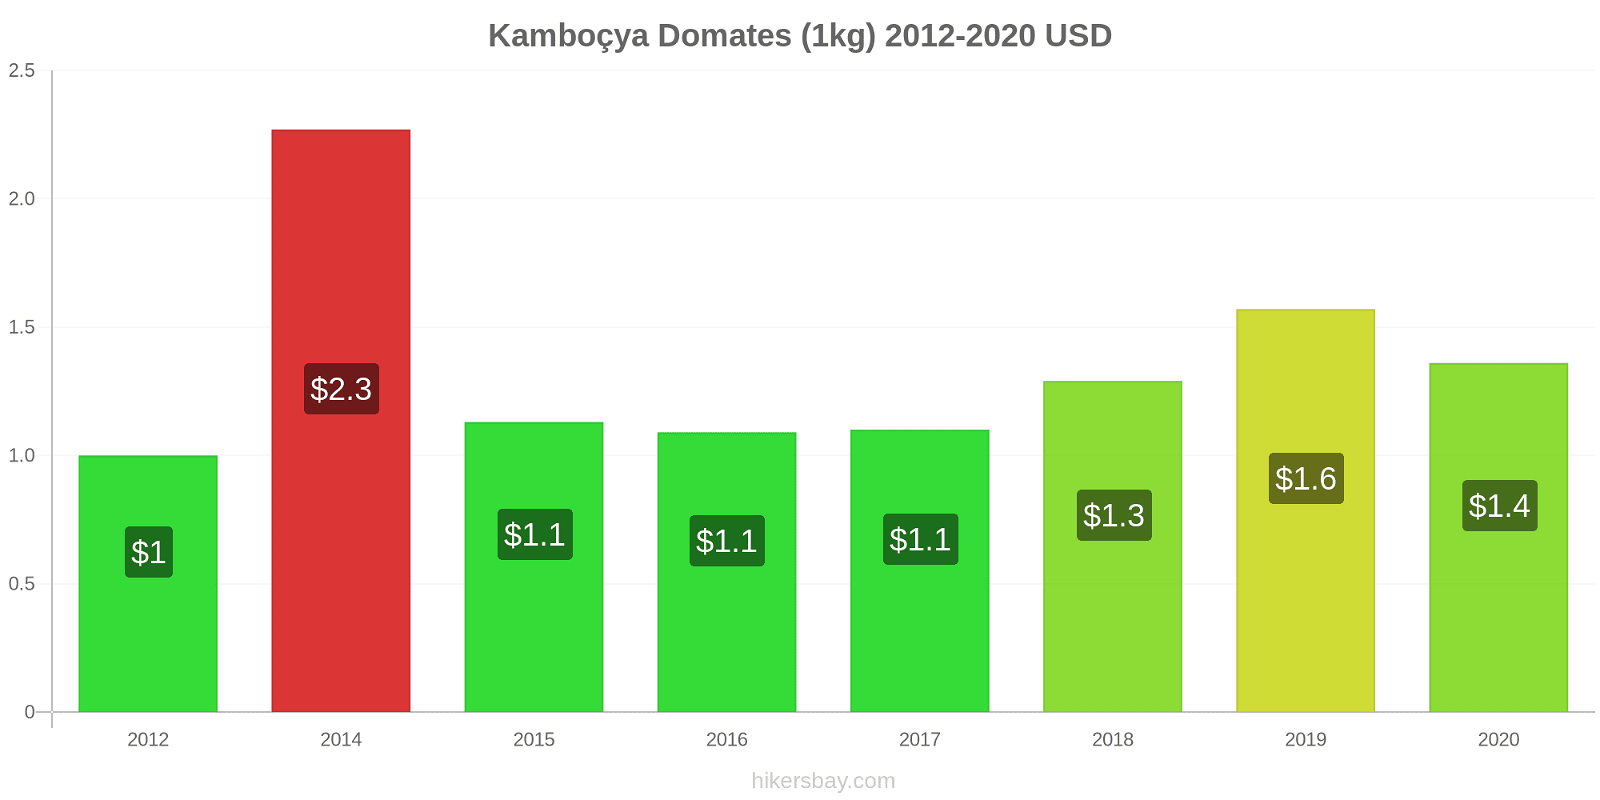 Kamboçya fiyat değişiklikleri Domates (1kg) hikersbay.com